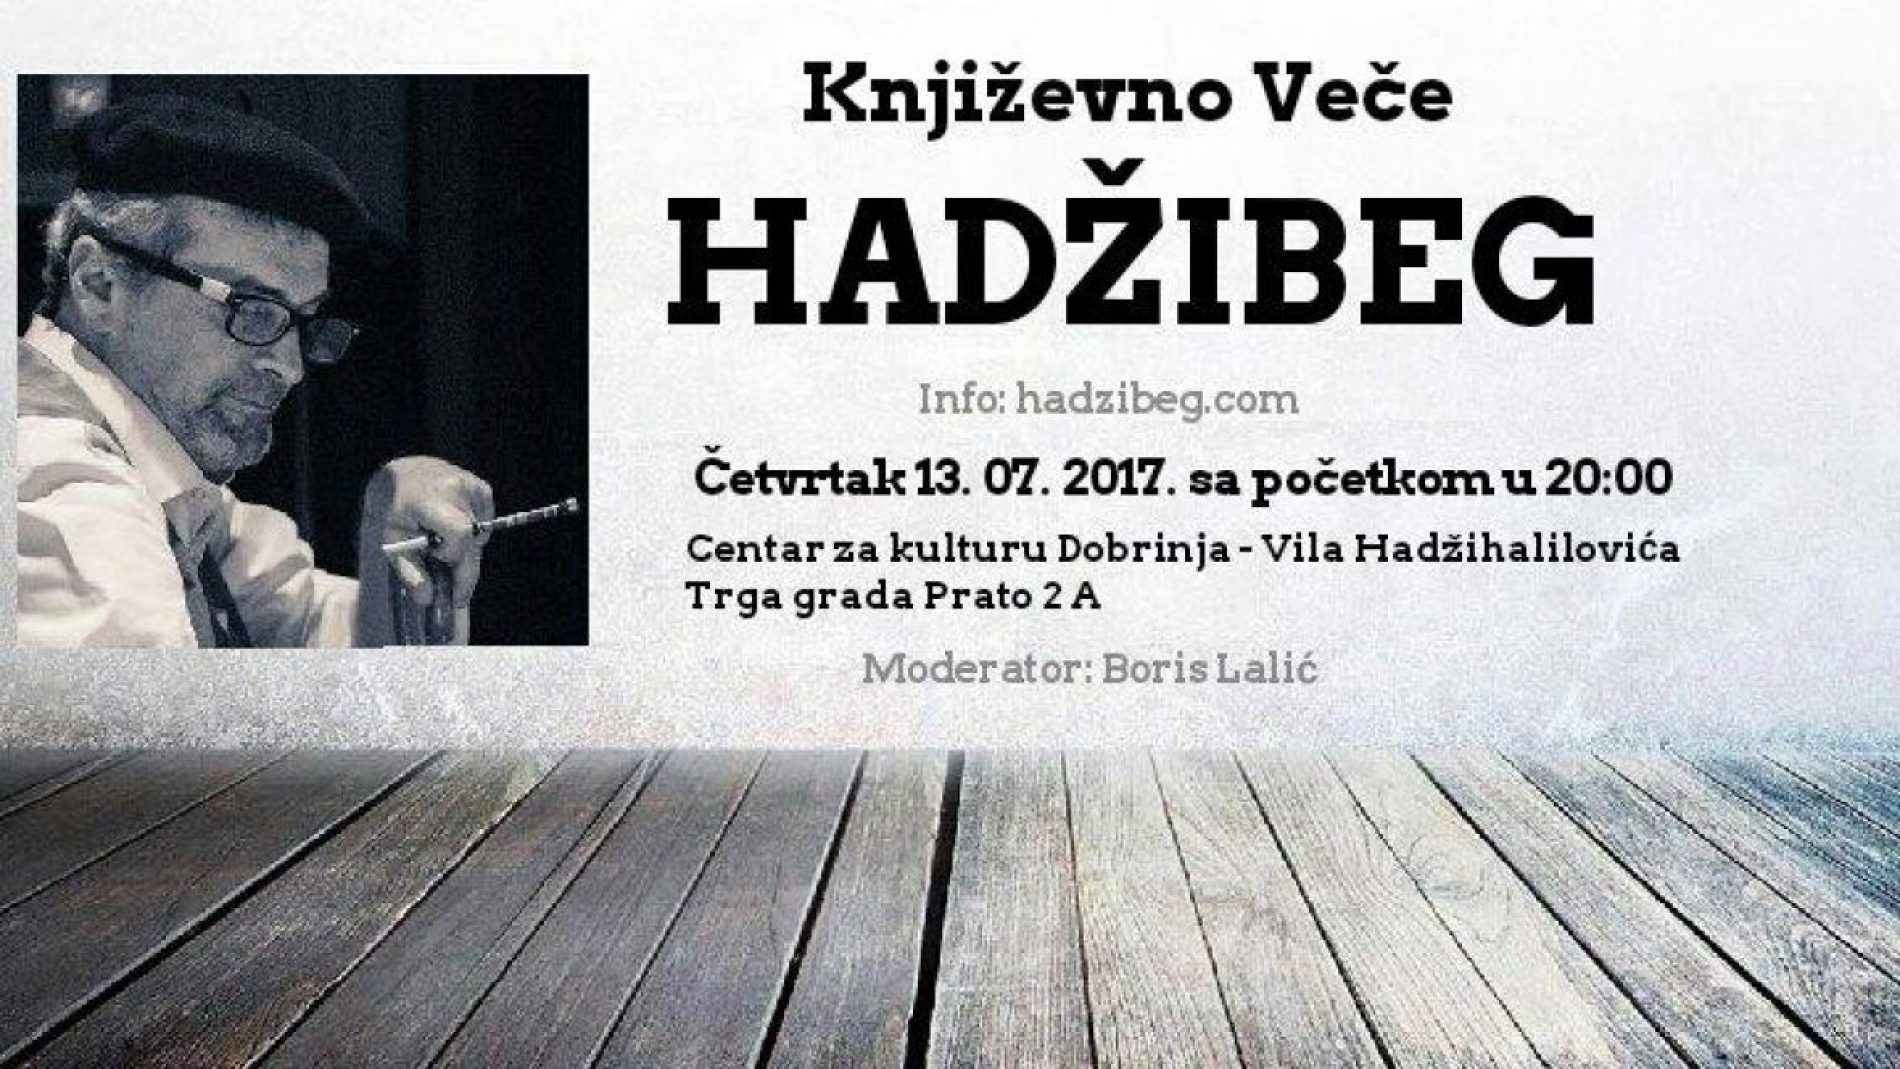 Tersli Hadžibeg iz bosanske mahale vratio književnosti prirodno pravo